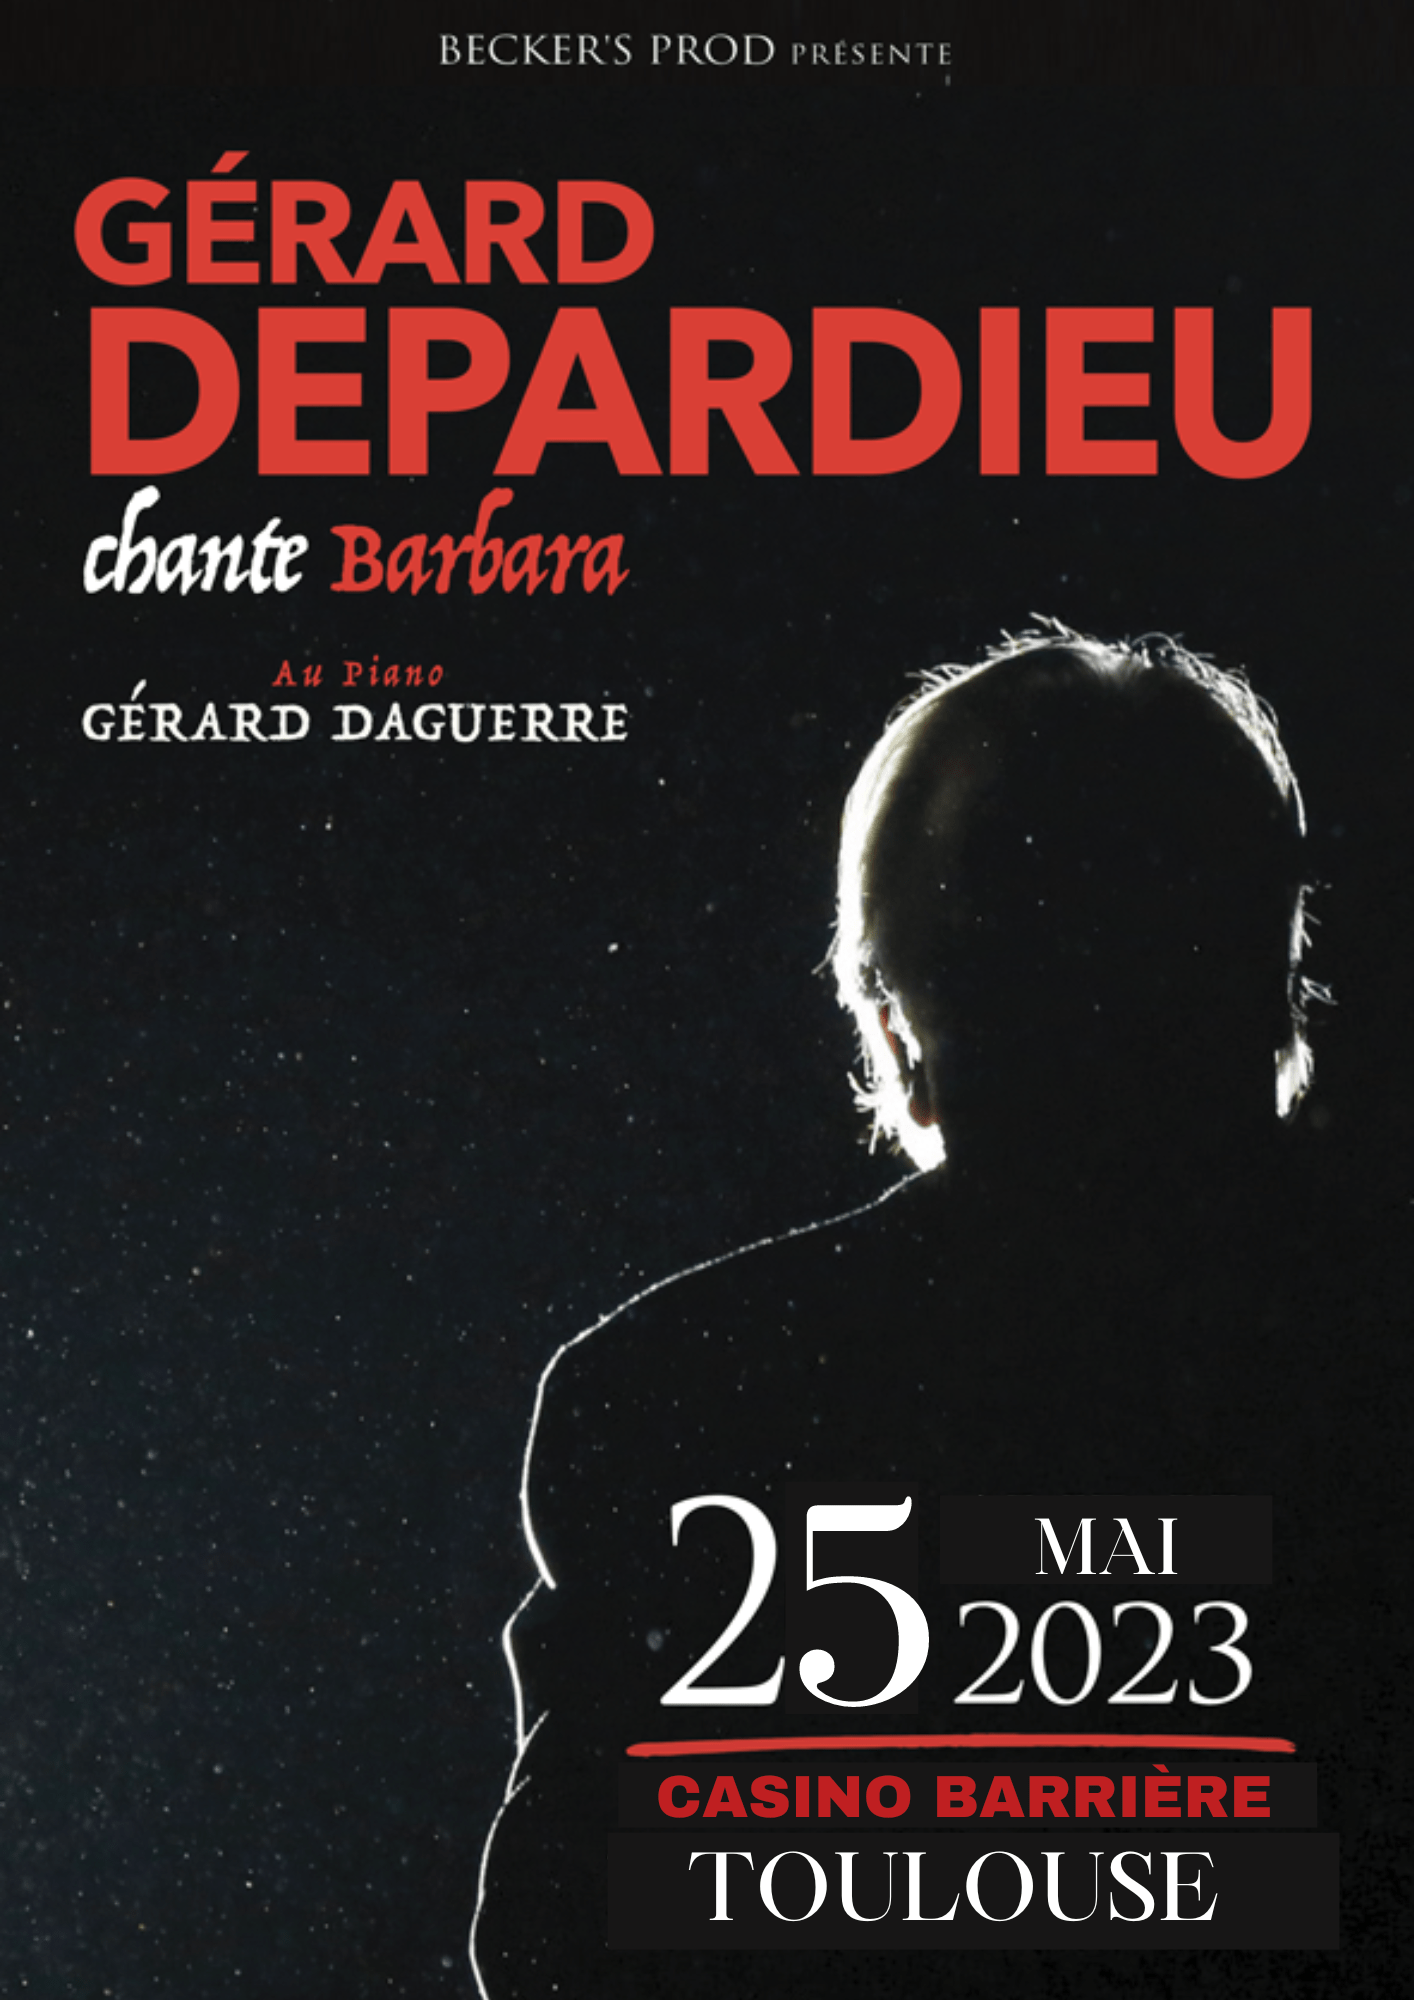 Gerard Depardieu - Chante Barbara